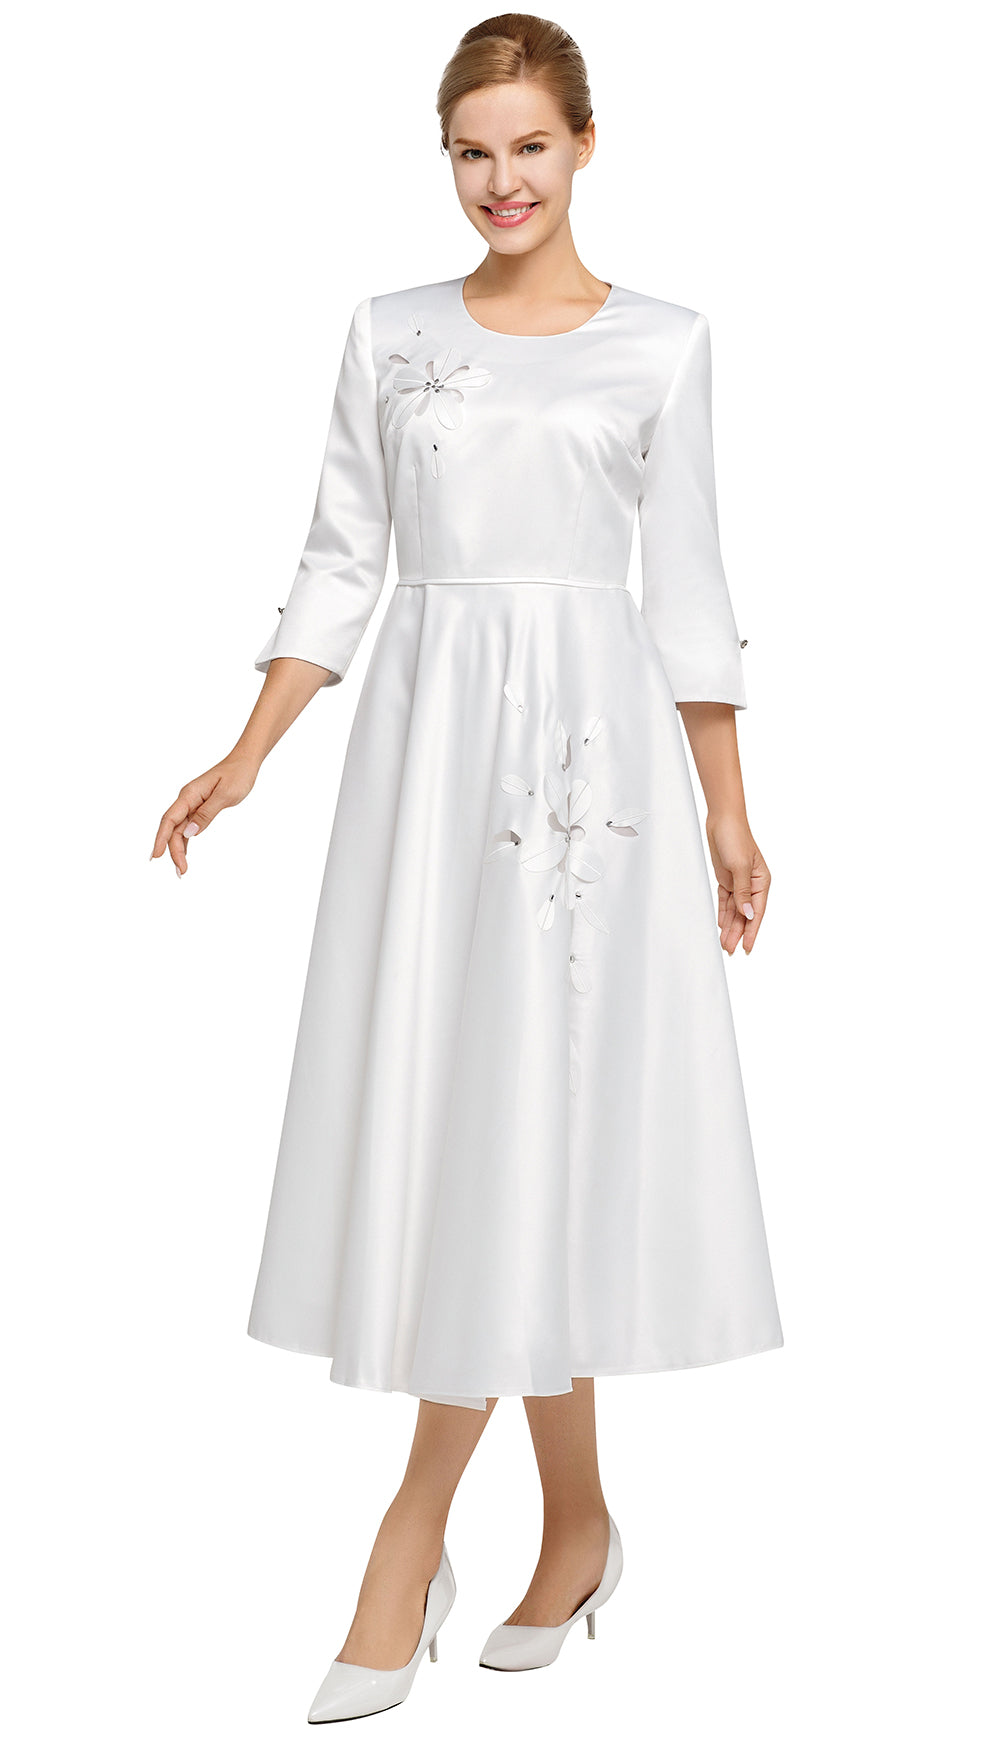 Nina Nischelle Church Dress 2957 - Church Suits For Less